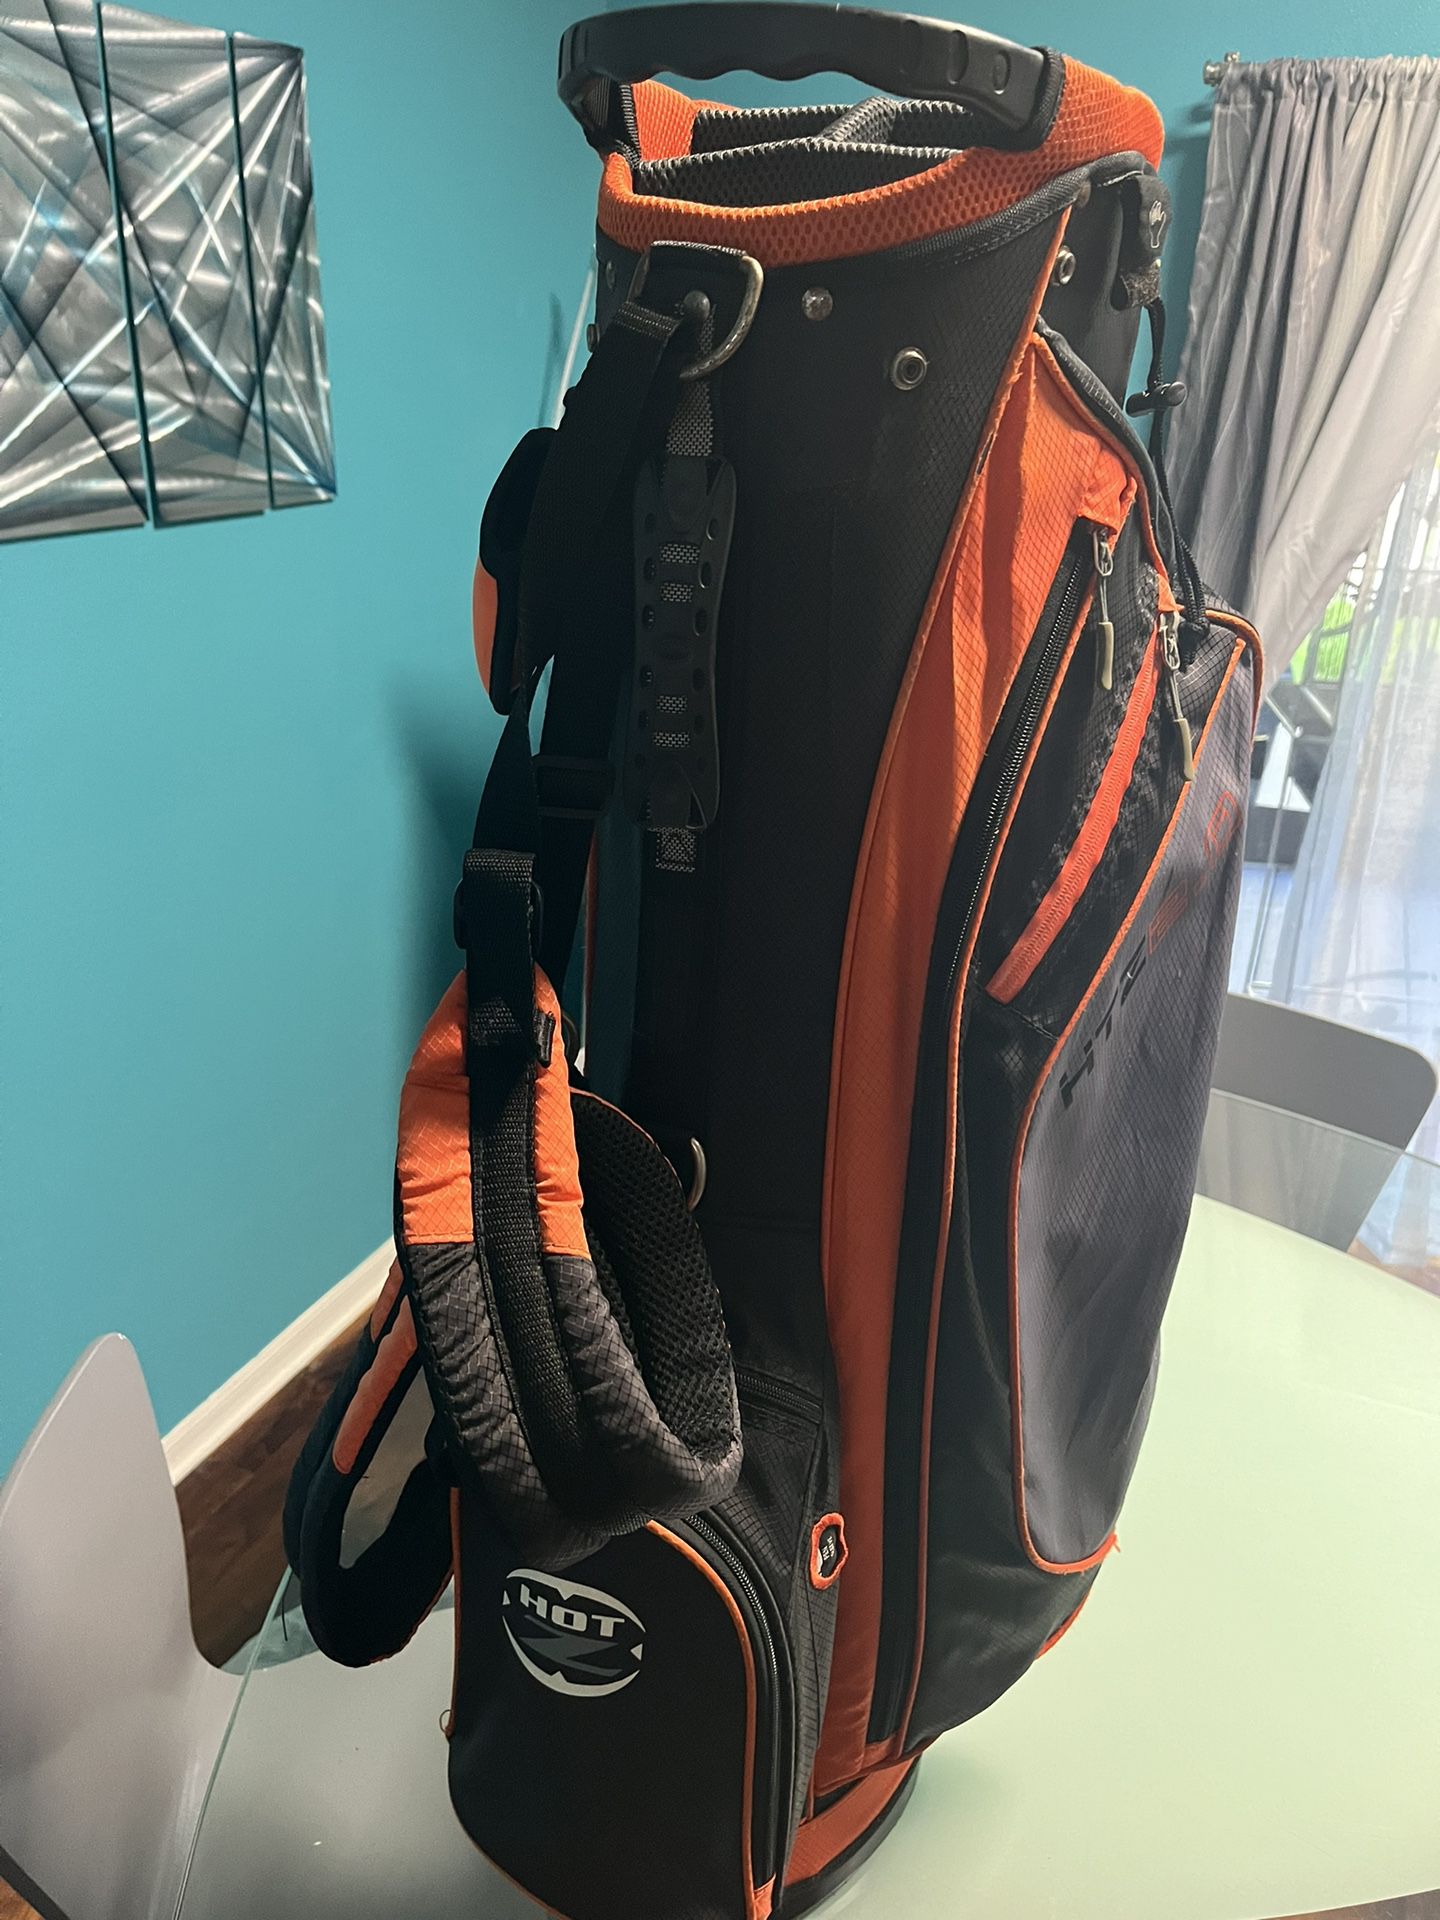 HotZ Lightweight Golf Stand Bag